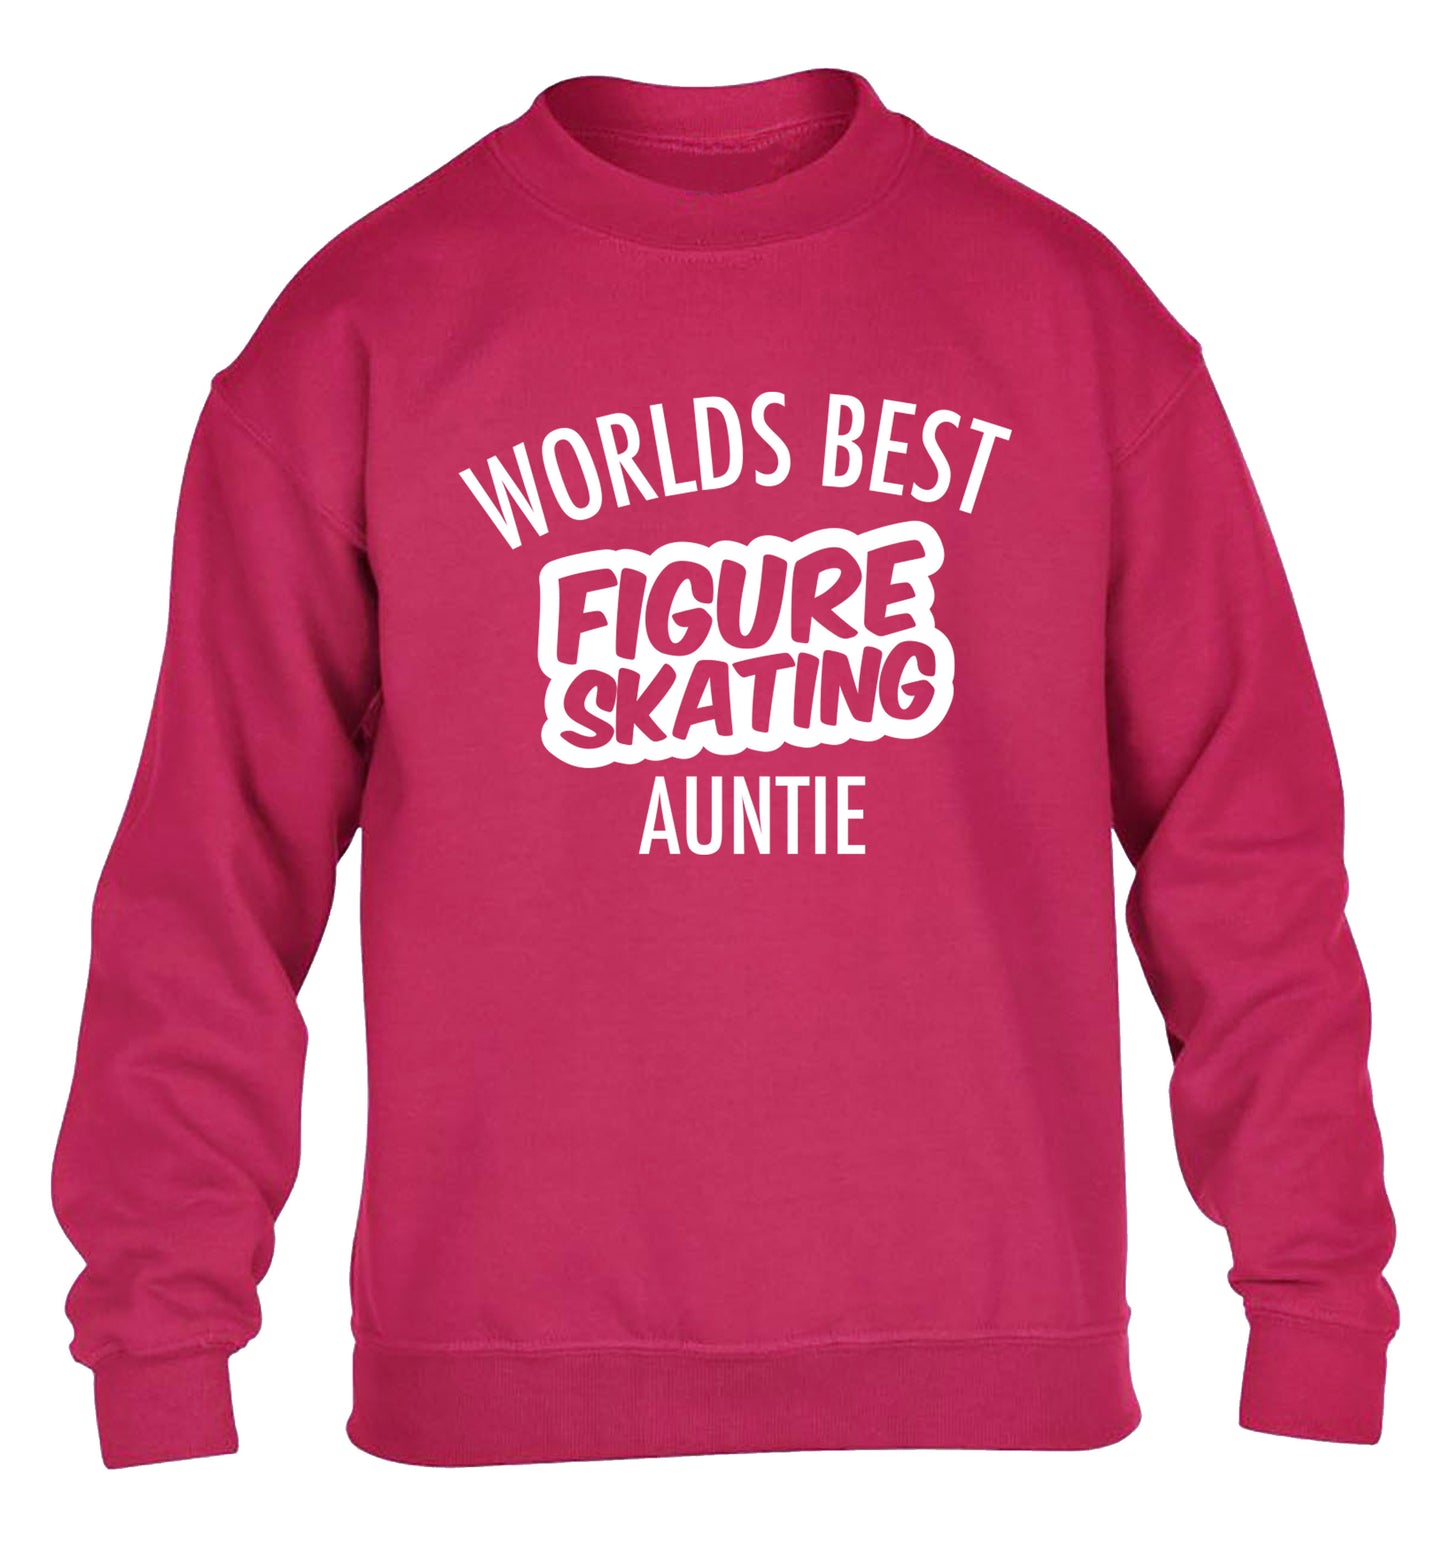 Worlds best figure skating auntie children's pink sweater 12-14 Years